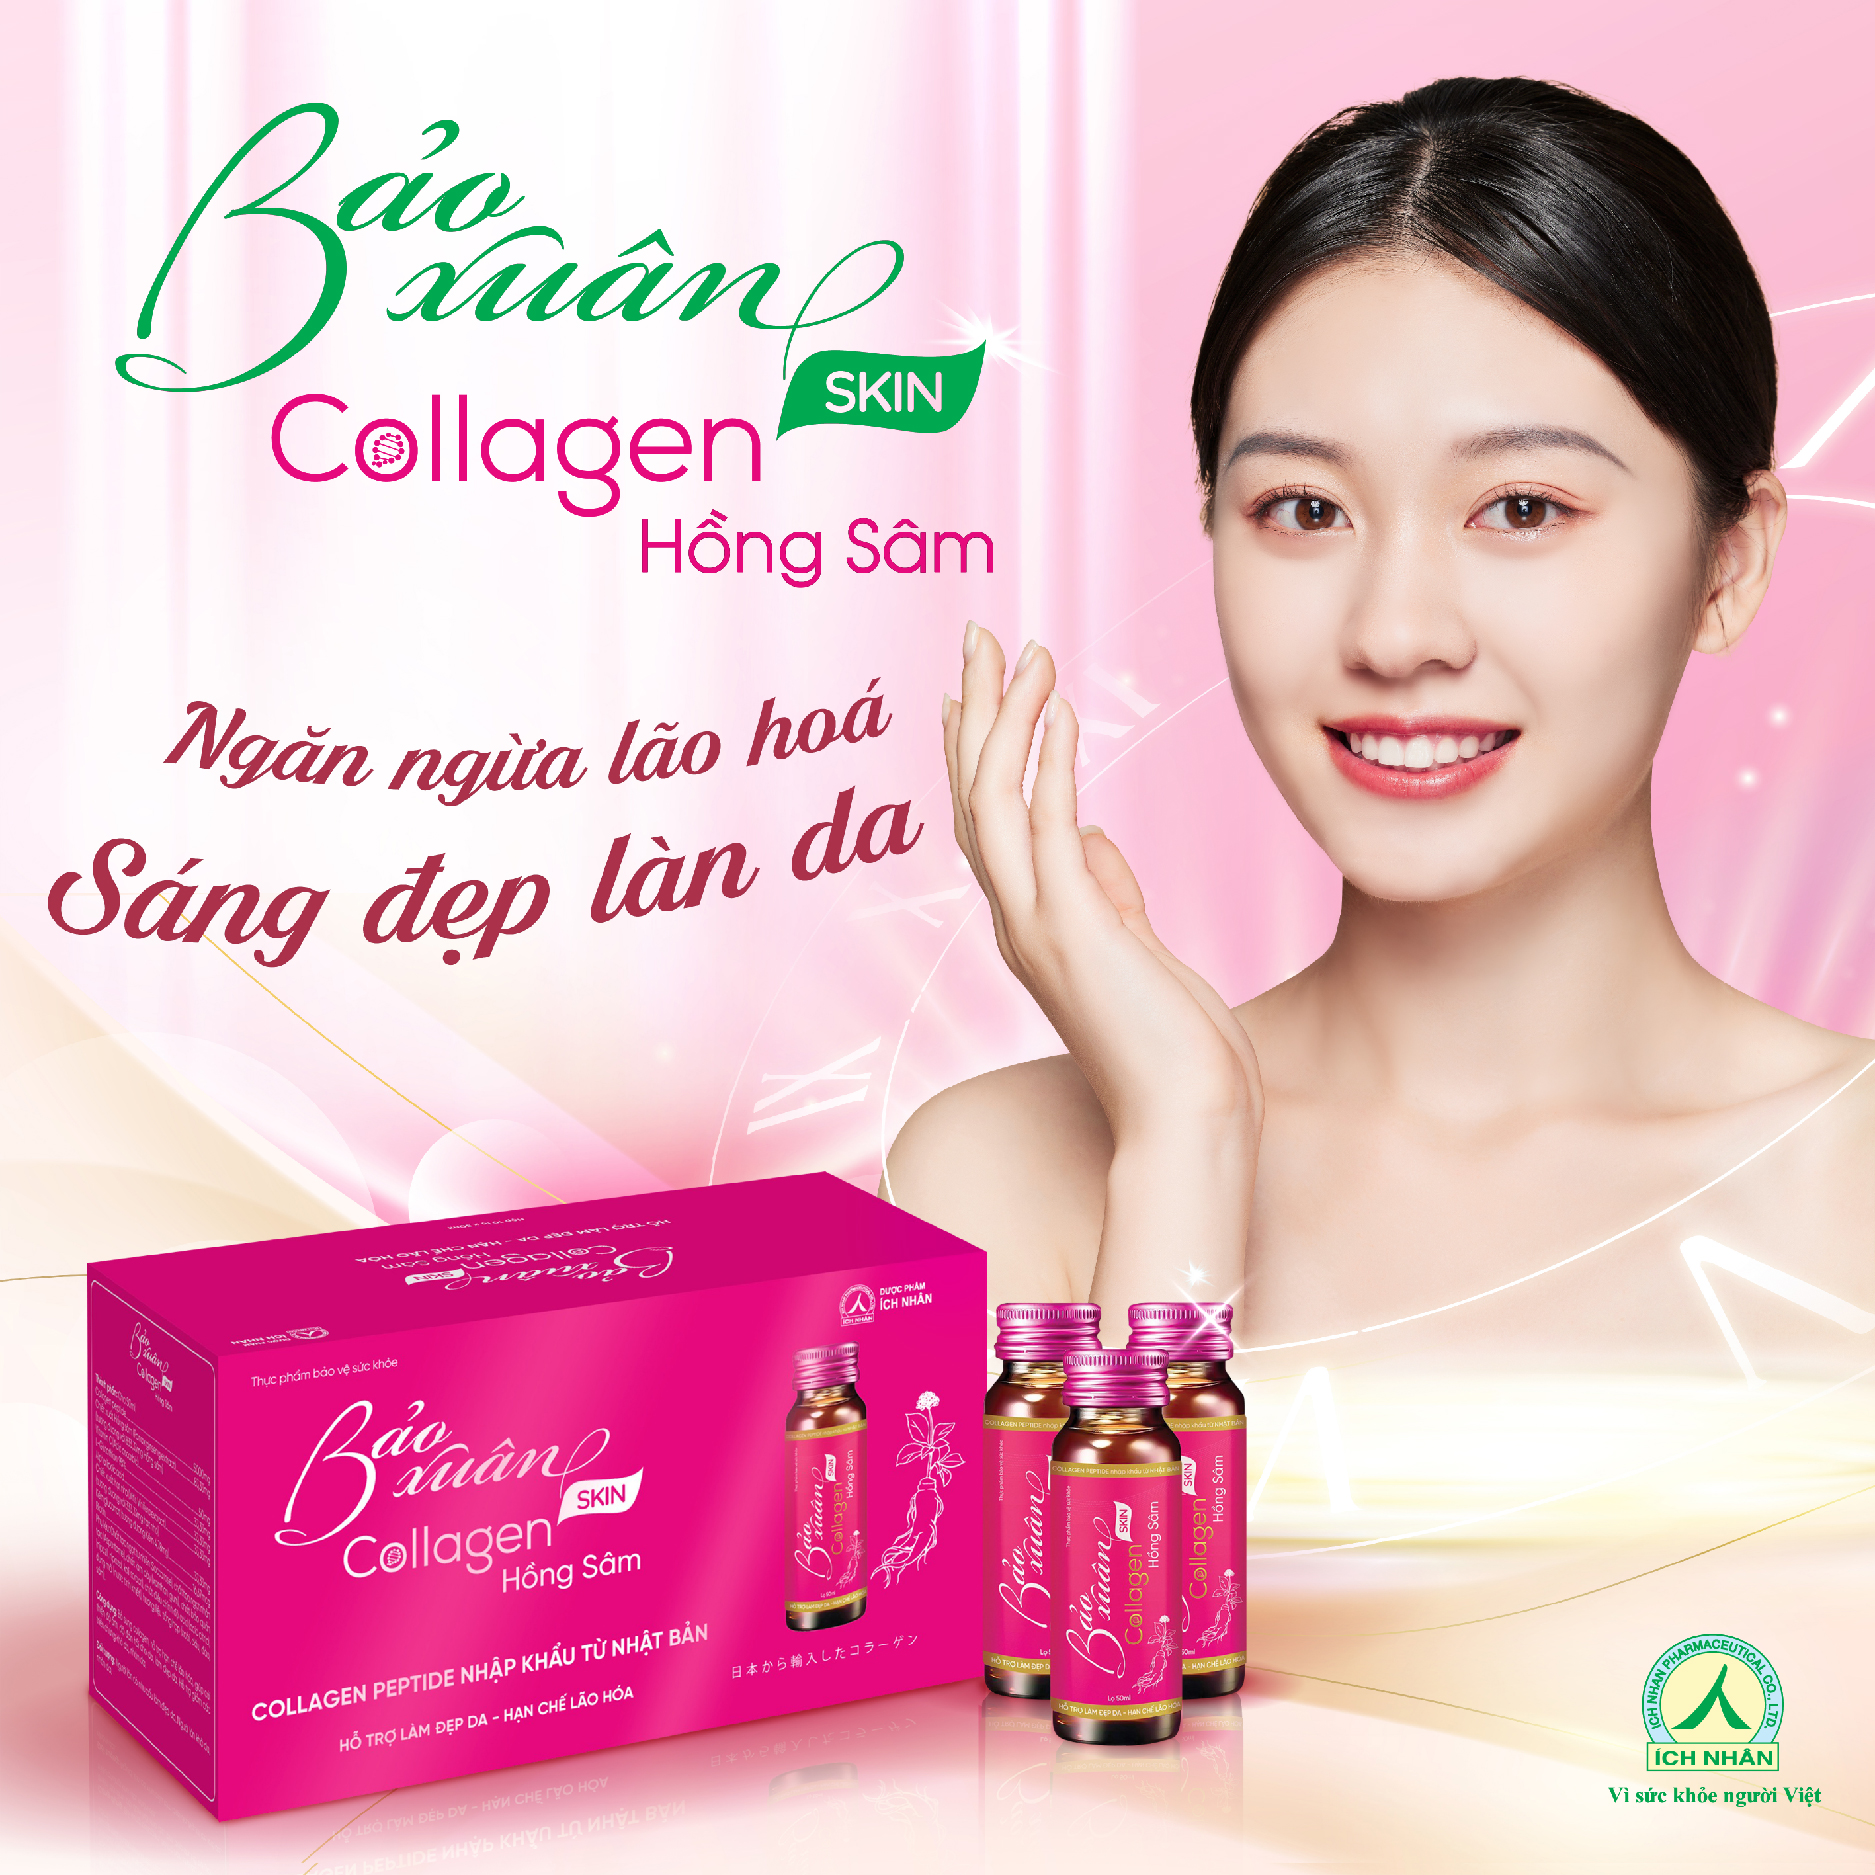 Combo 3 Nước Uống Bổ Sung Bảo Xuân Skin Collagen Hồng Sâm giúp hạn chế lão hóa, tăng đàn hồi cho da, làm sáng đẹp da Hộp 10 Lọ x50ml